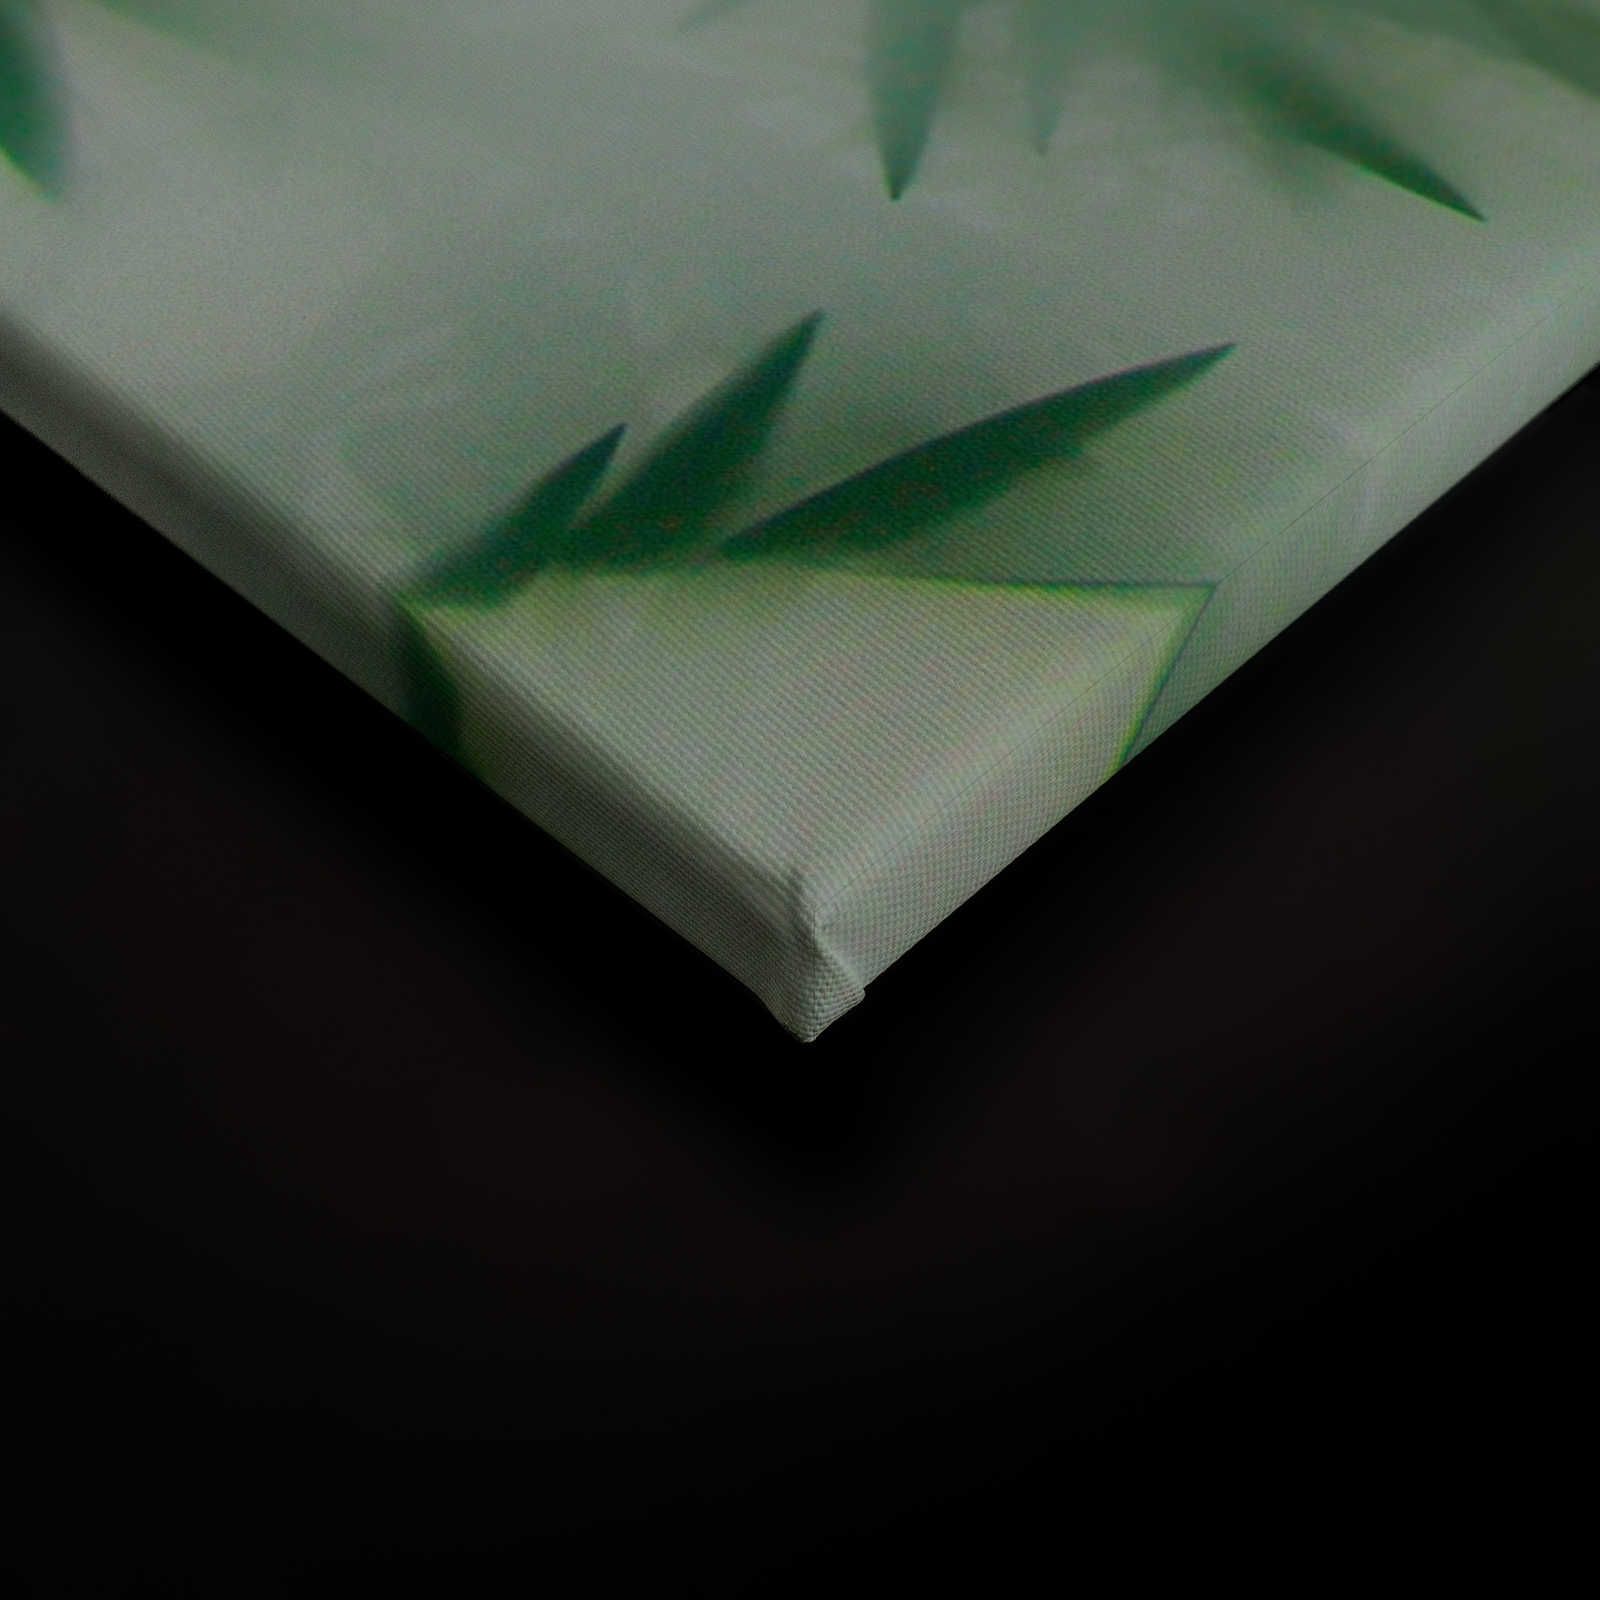             Panda Paradise 1 - Quadro su tela di bambù Foglie verdi nella nebbia - 0,90 m x 0,60 m
        